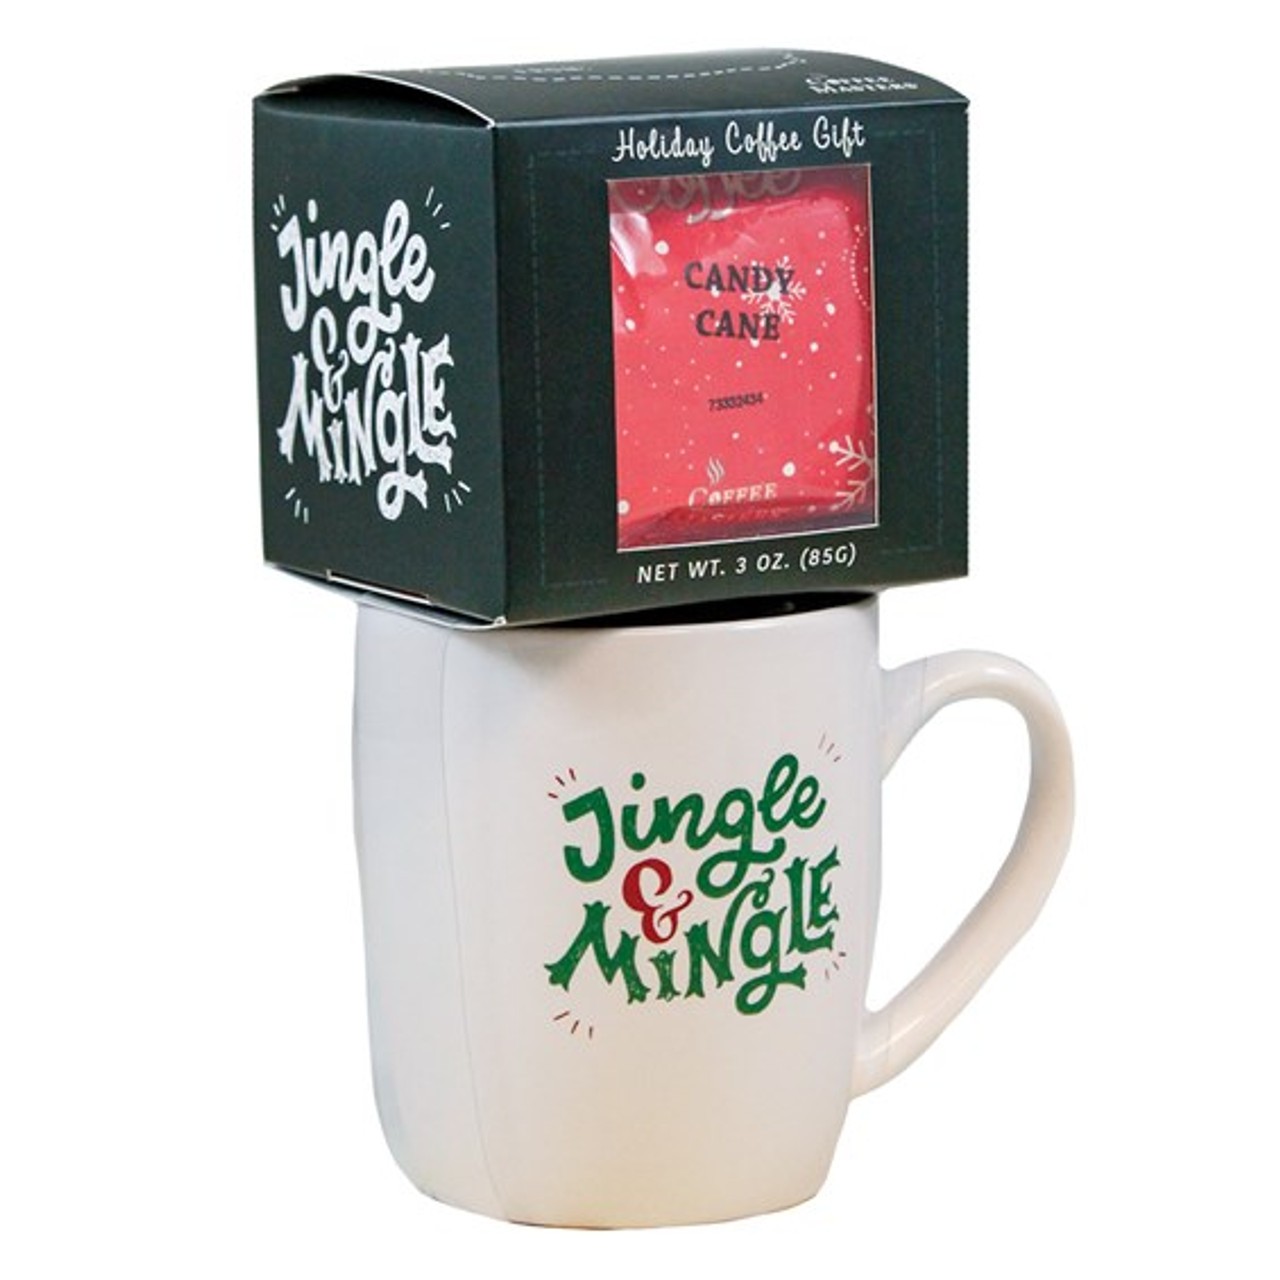 Jingle and mingle Mug and Coffee Christmas Gift Set.